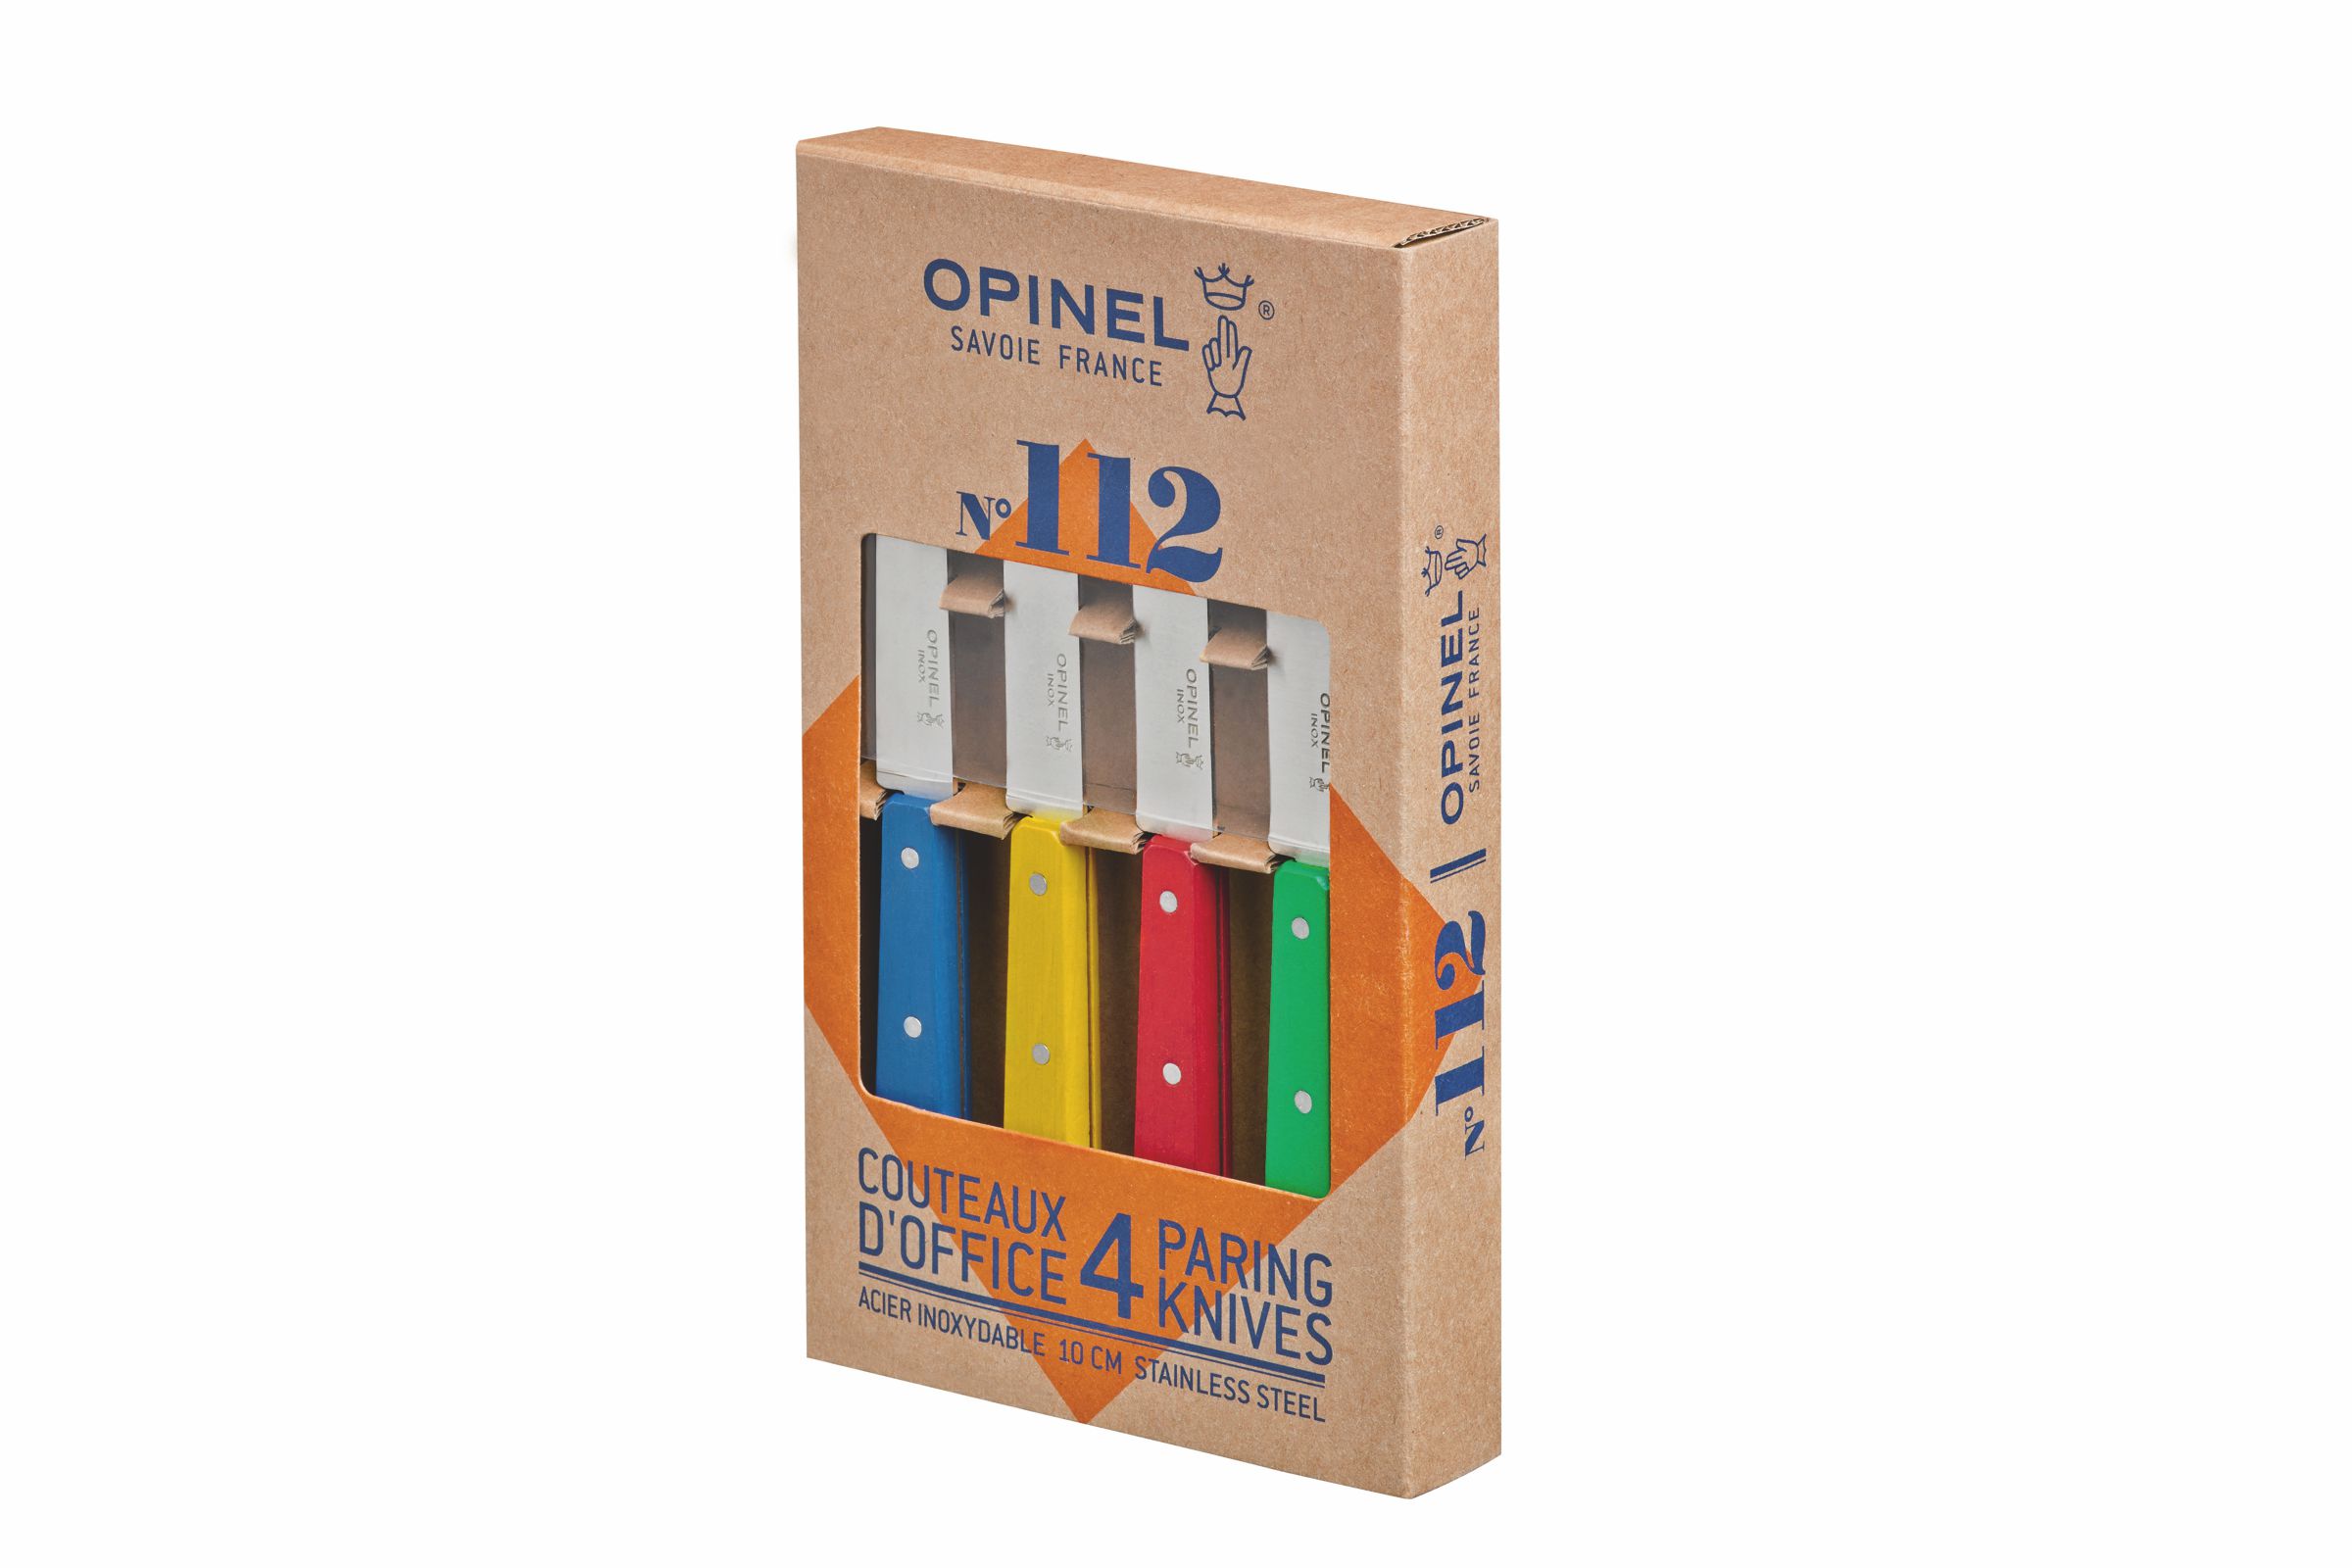 Opinel Küchenmesser-Set - 4-teilig - Officemesser No. 112 - bunt - Produktansicht mit Verpackung